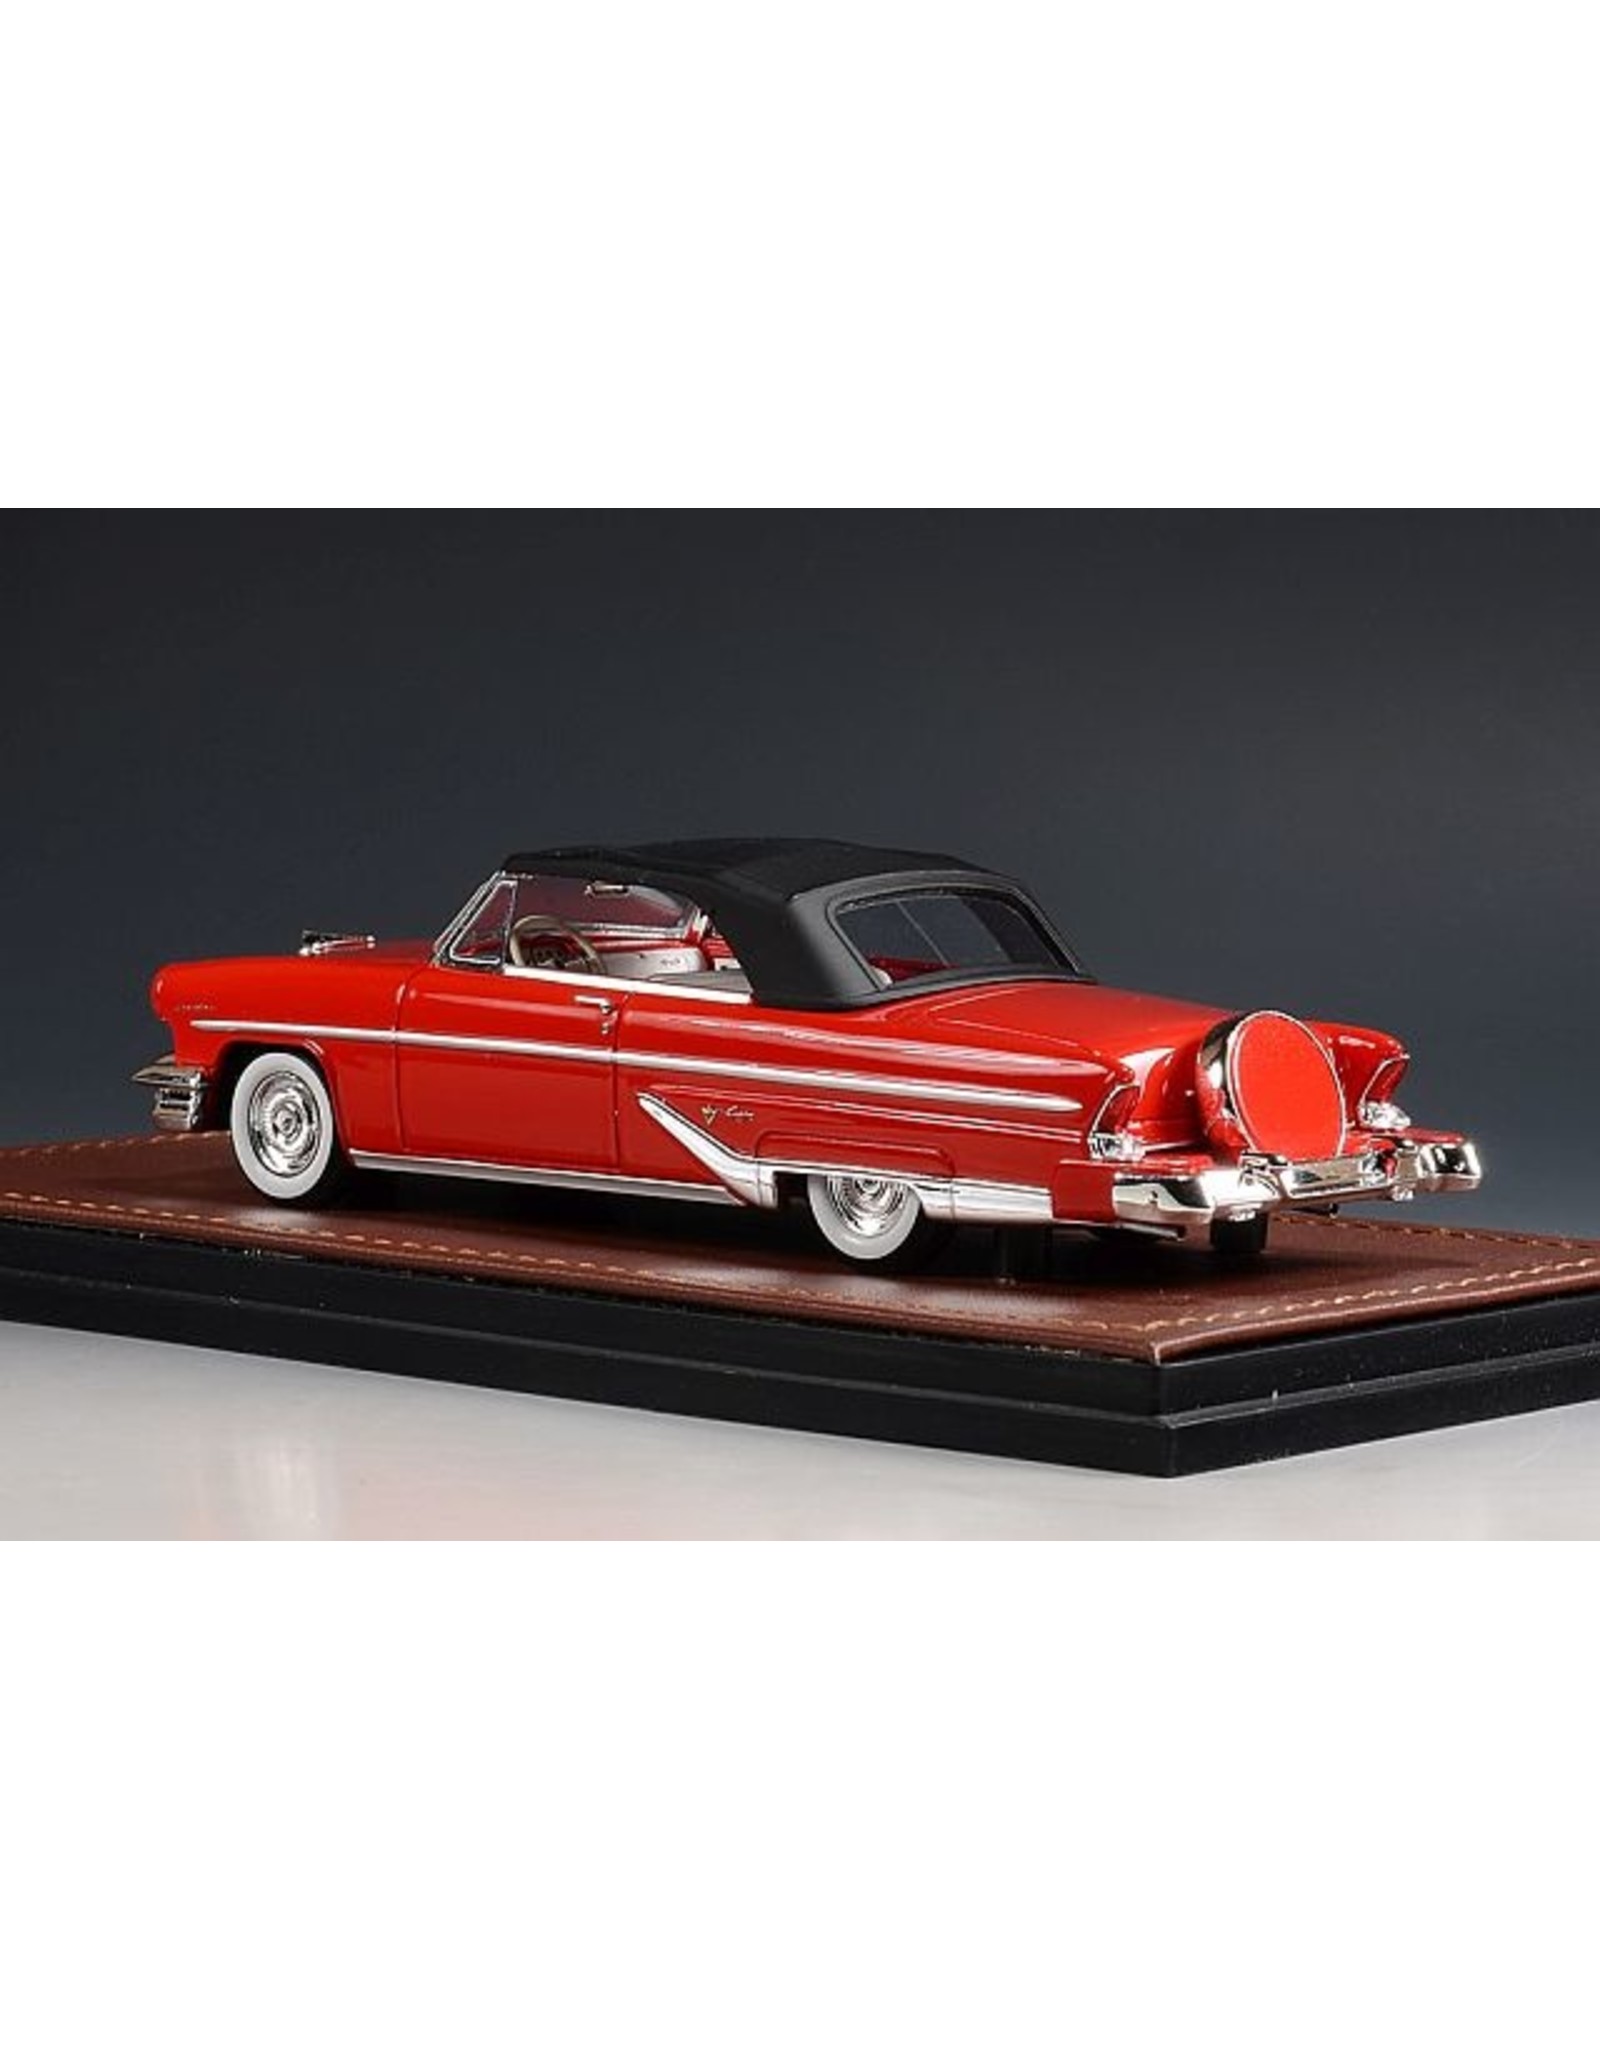 Lincoln Lincoln Capri Convertible(1955)closed top(red)